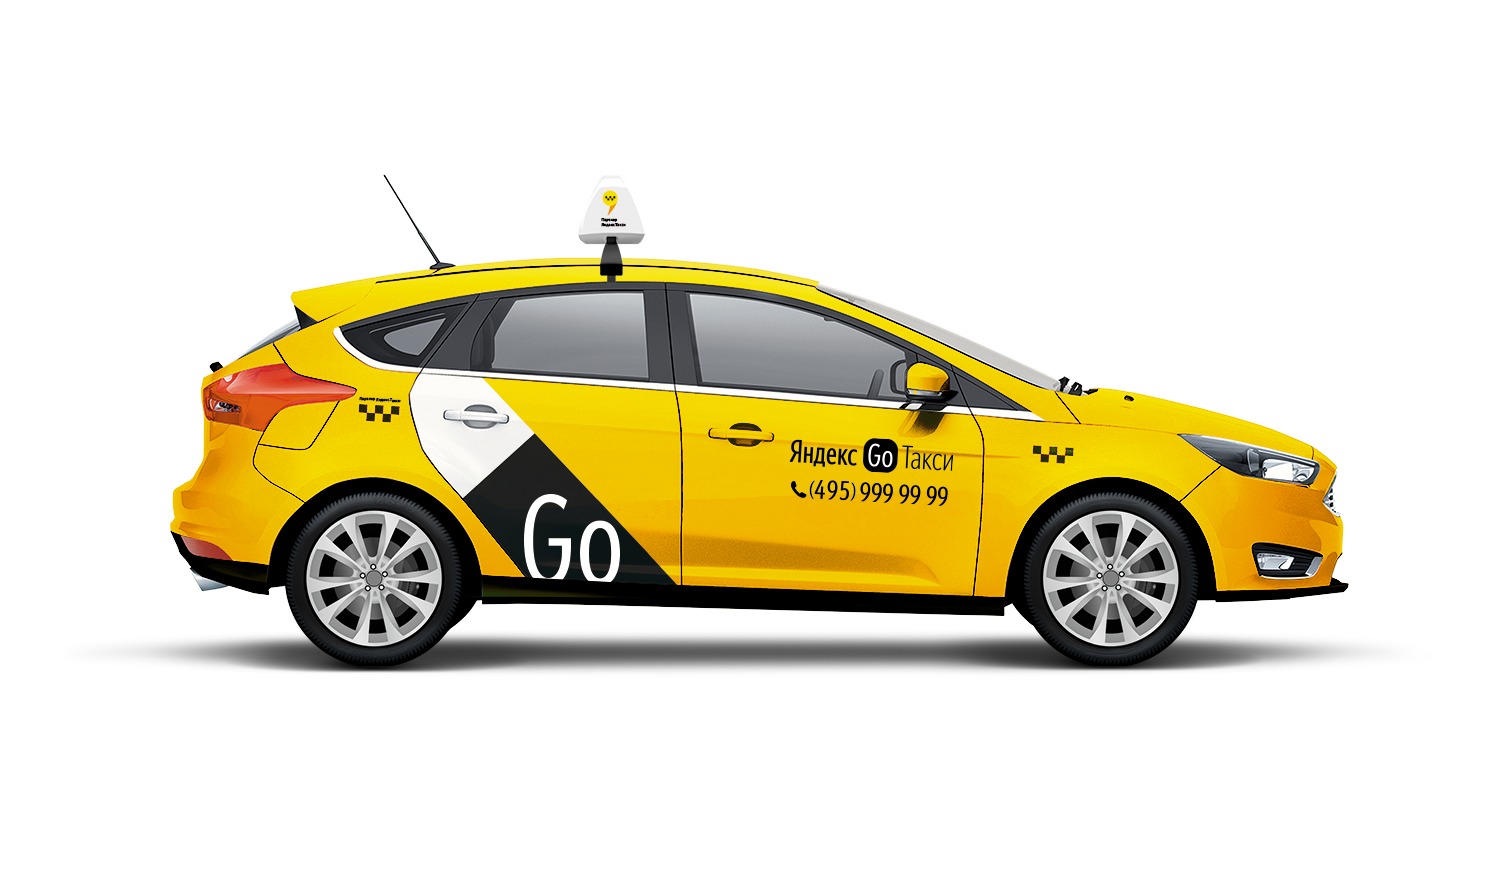 Подключение к Яндекс Go Такси в Санкт-Петербурге